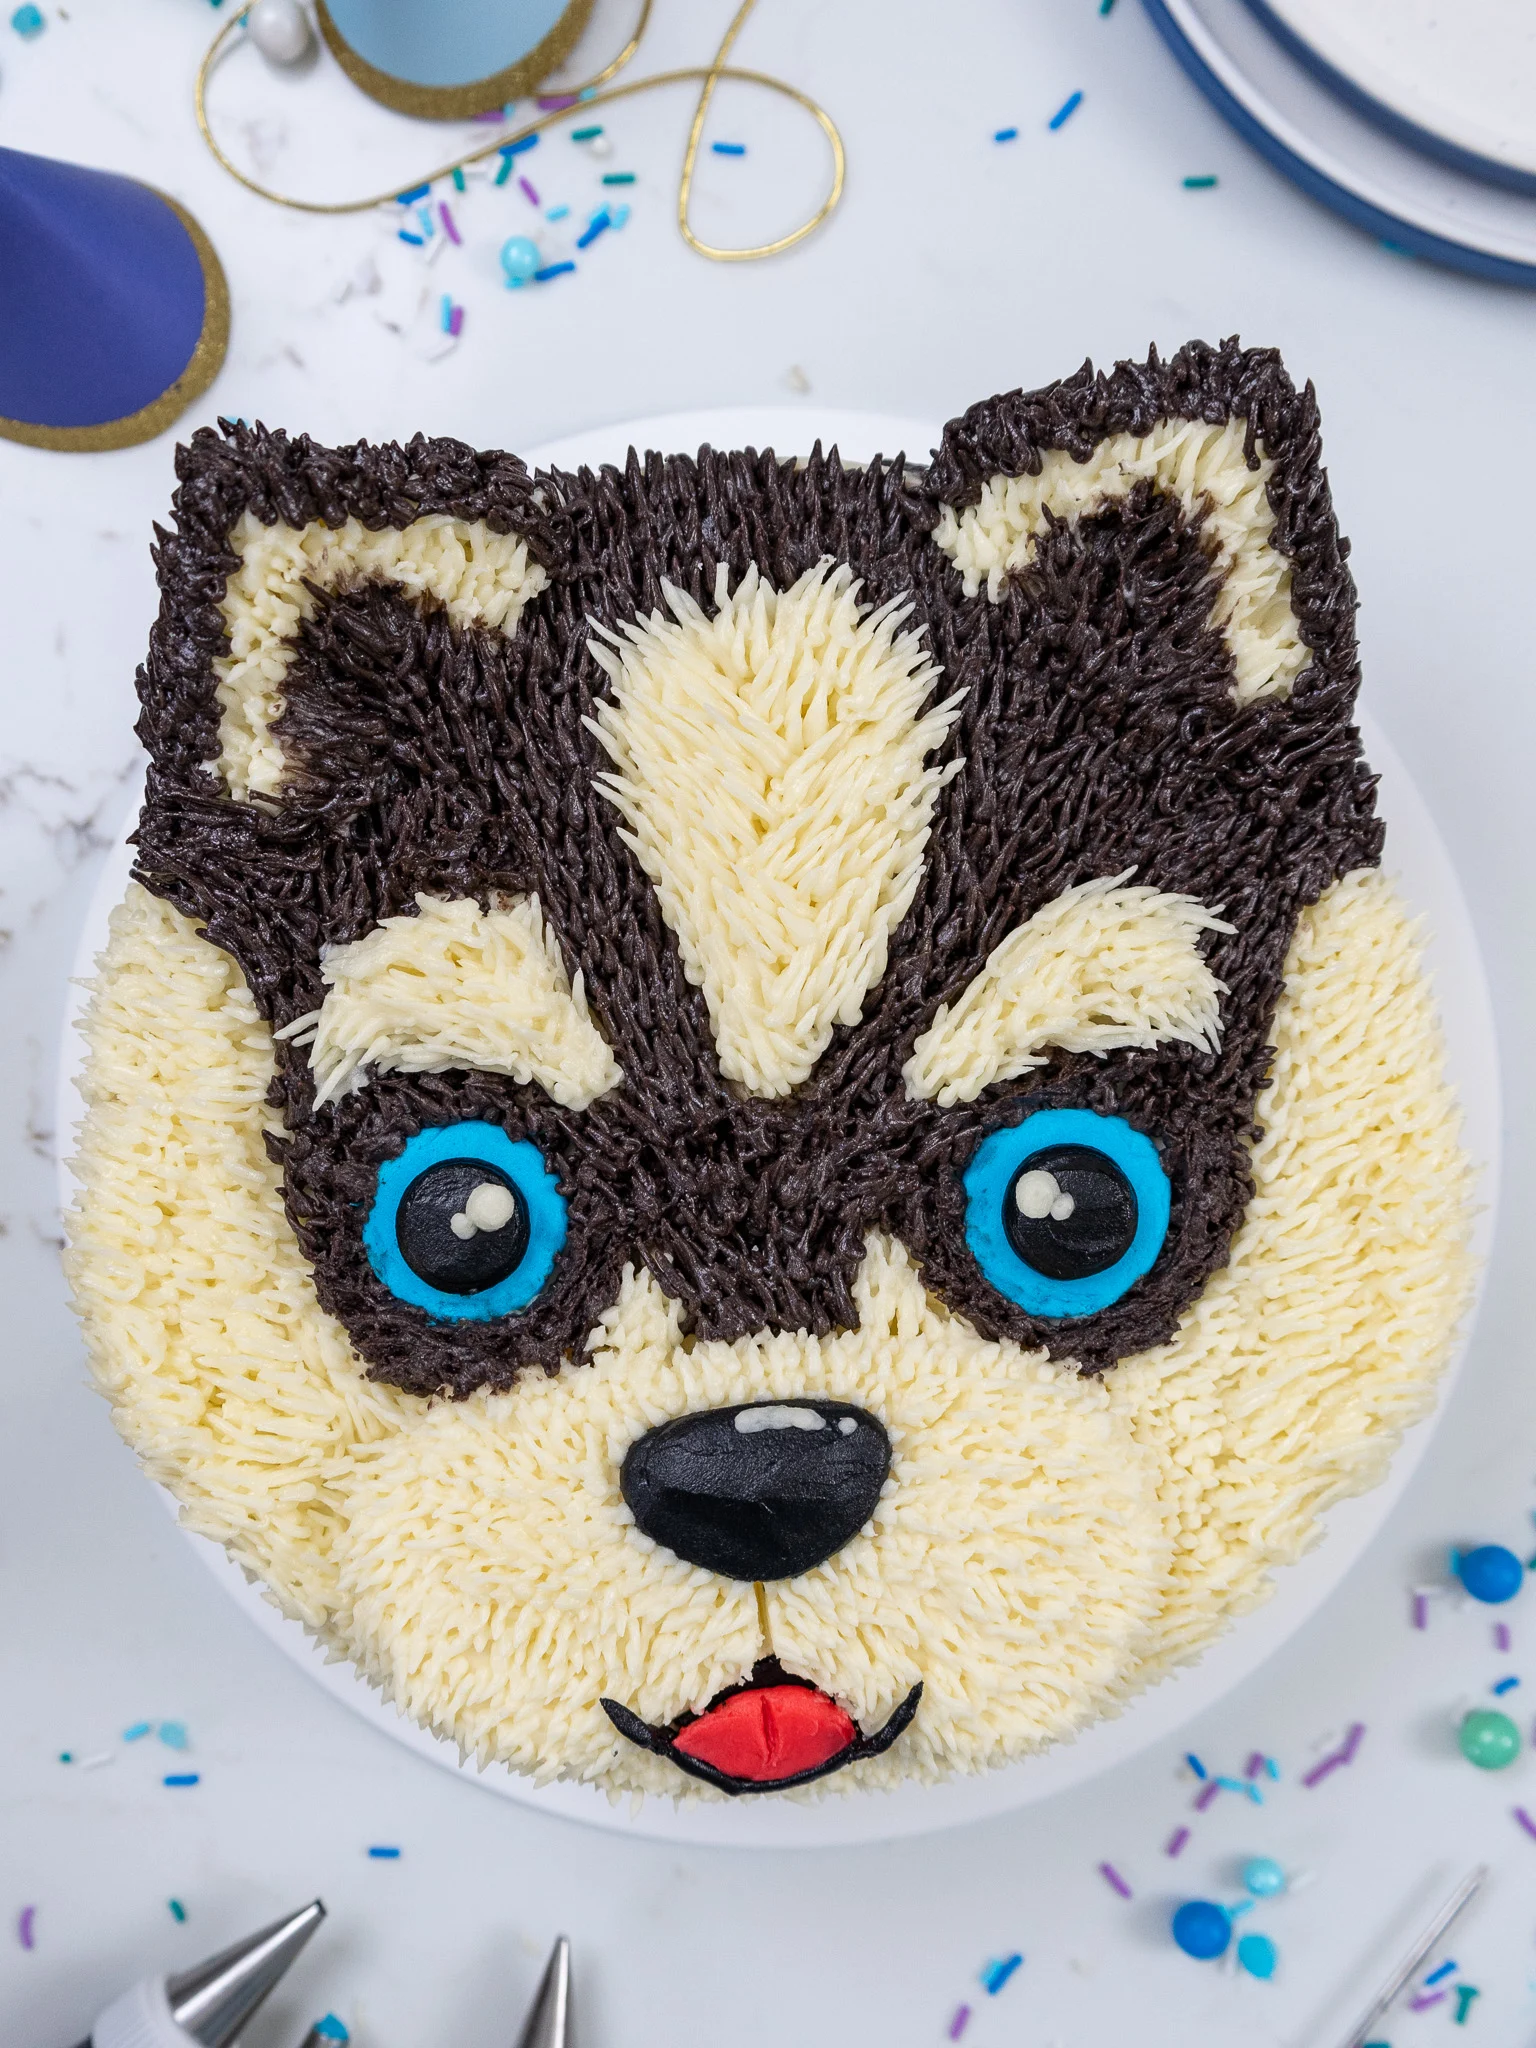 image of a cute buttercream husky cake